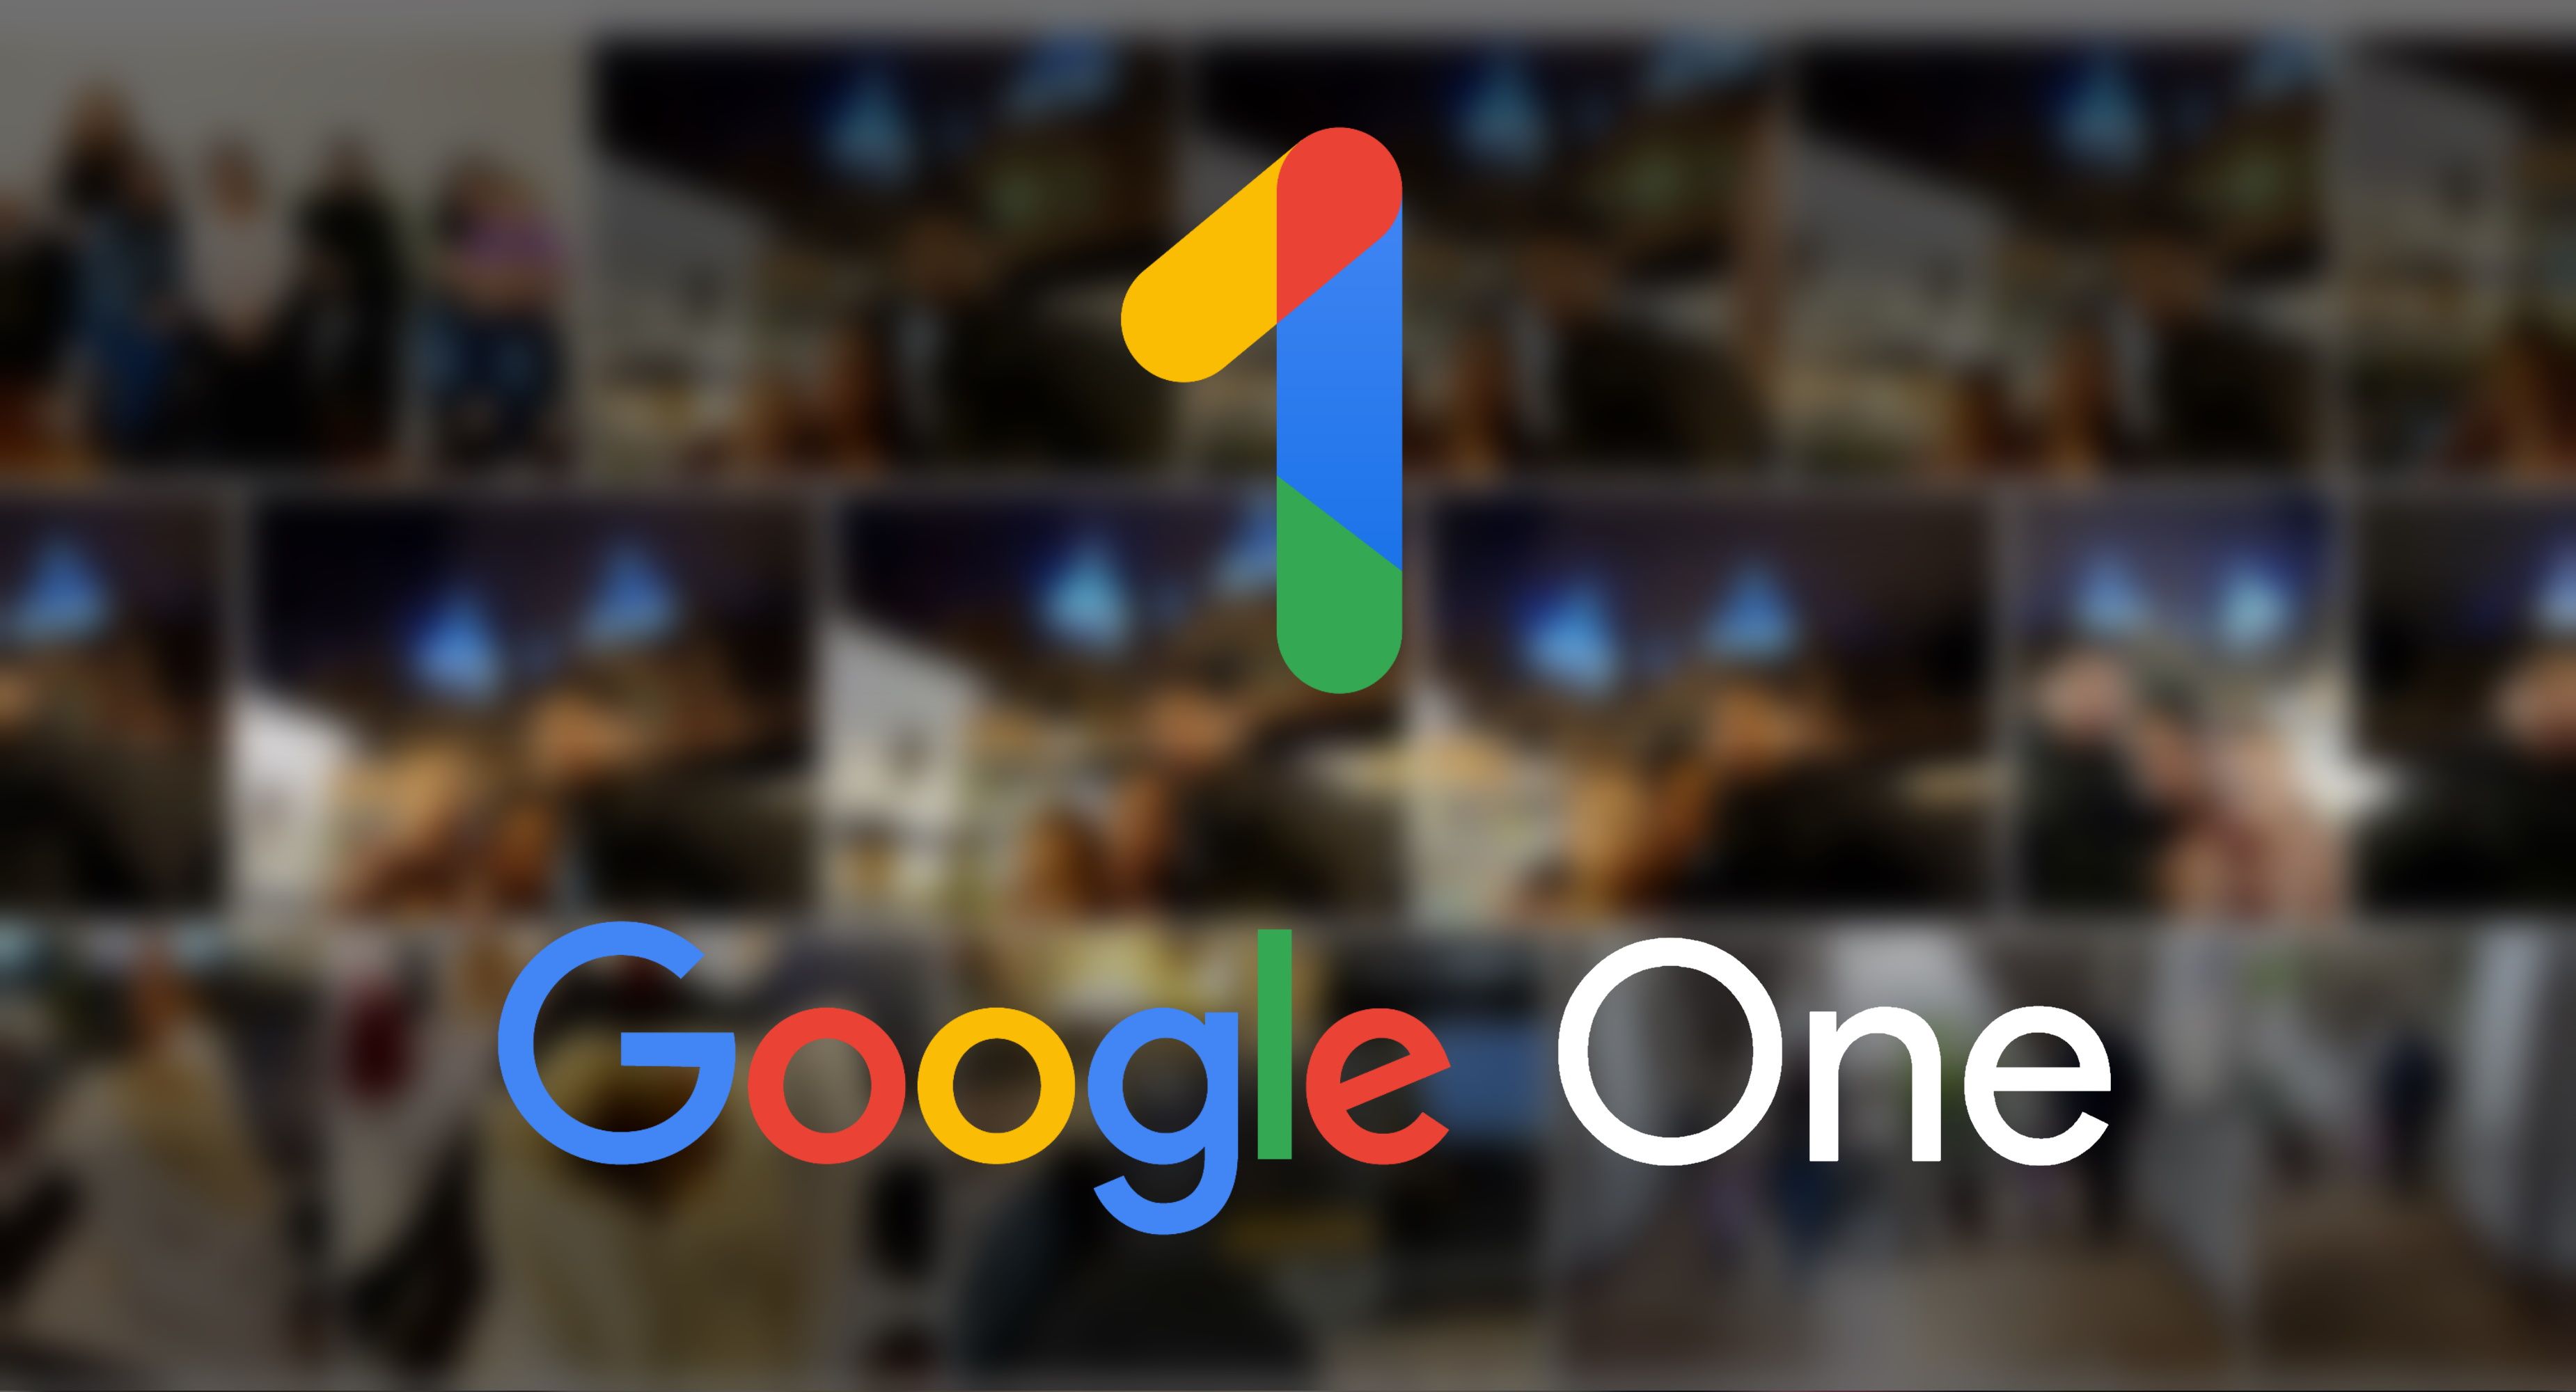 plano de fundo dos backups desfocados do Google Fotos com o logotipo e o script do Google One em primeiro plano